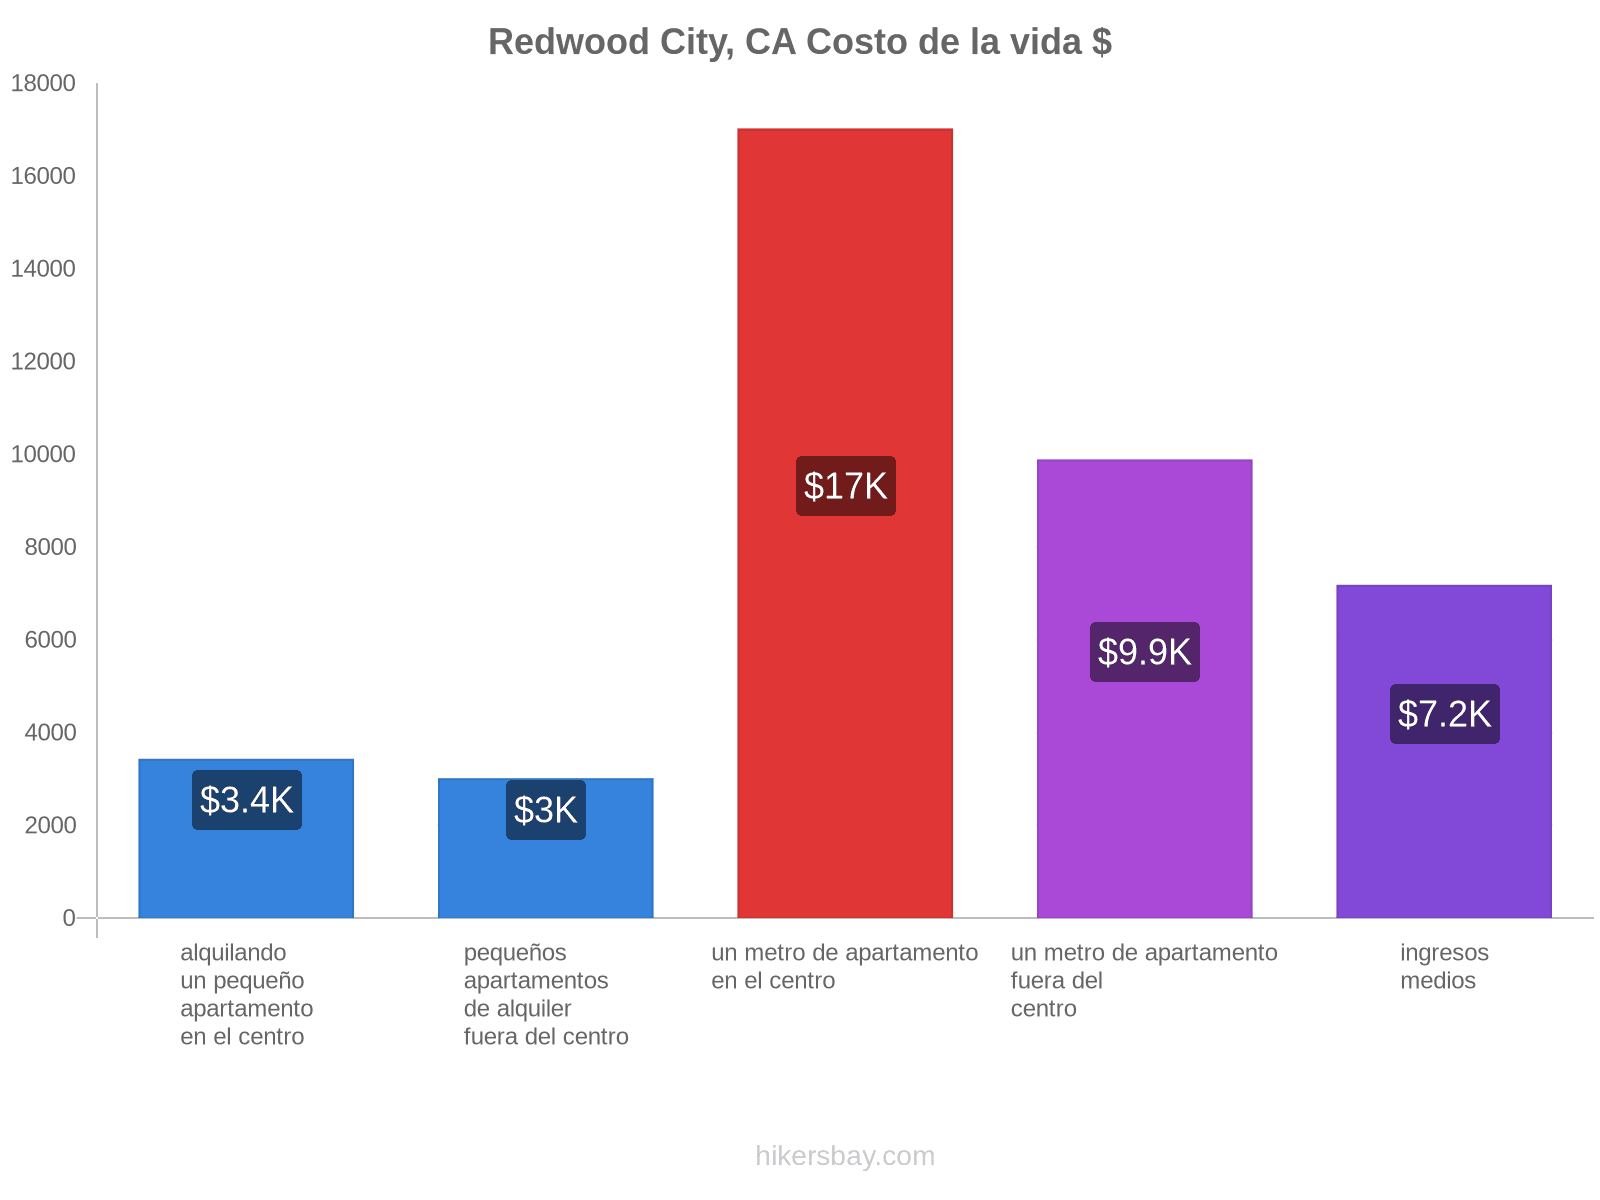 Redwood City, CA costo de la vida hikersbay.com